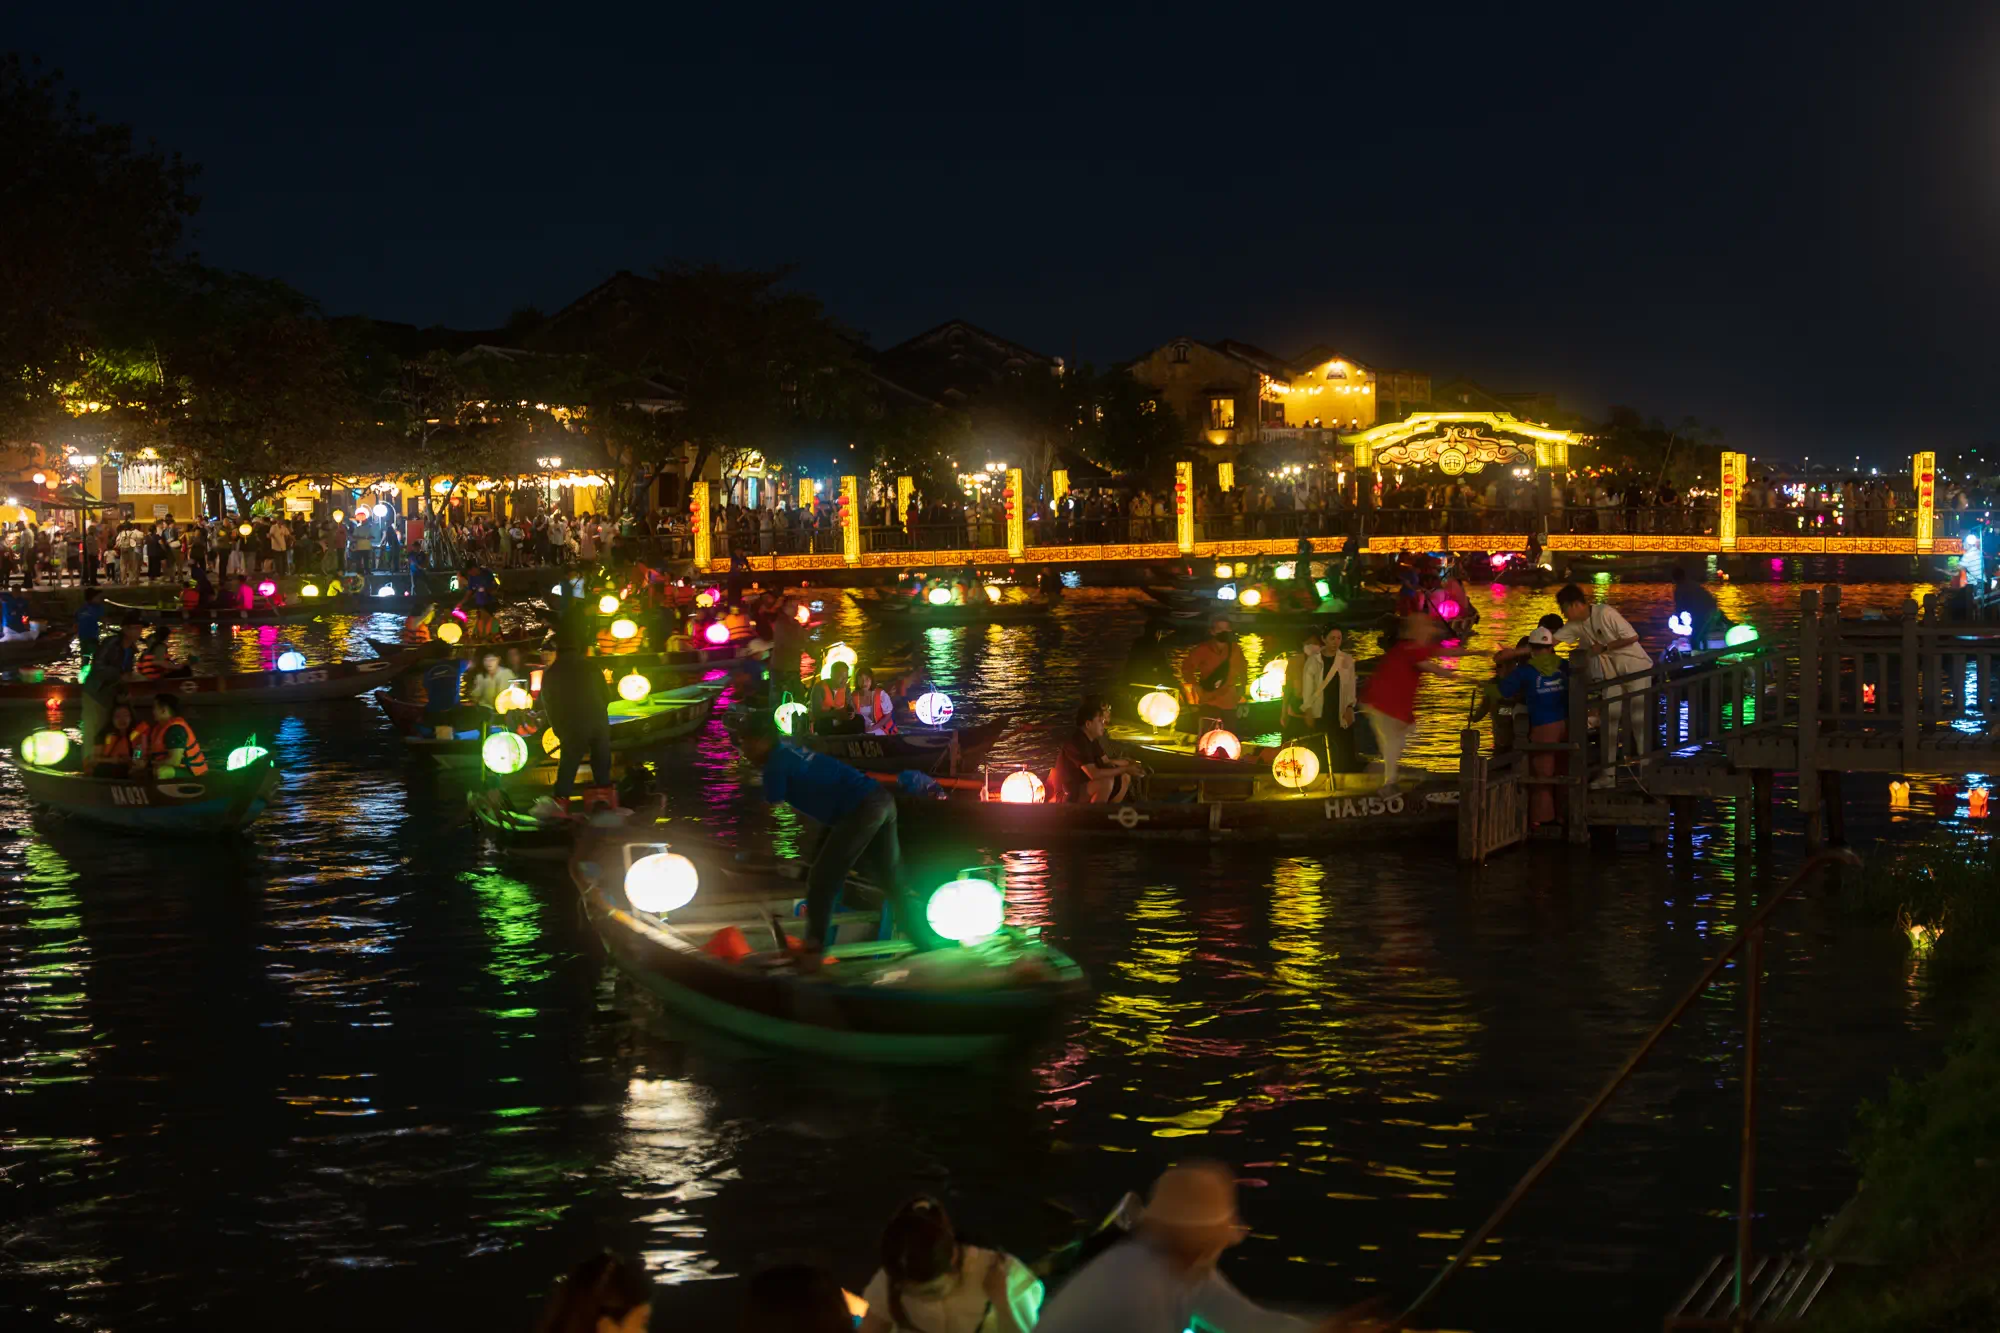 夜の川にうかぶ多数の手こぎボート。それぞれの上には提灯が光っている。